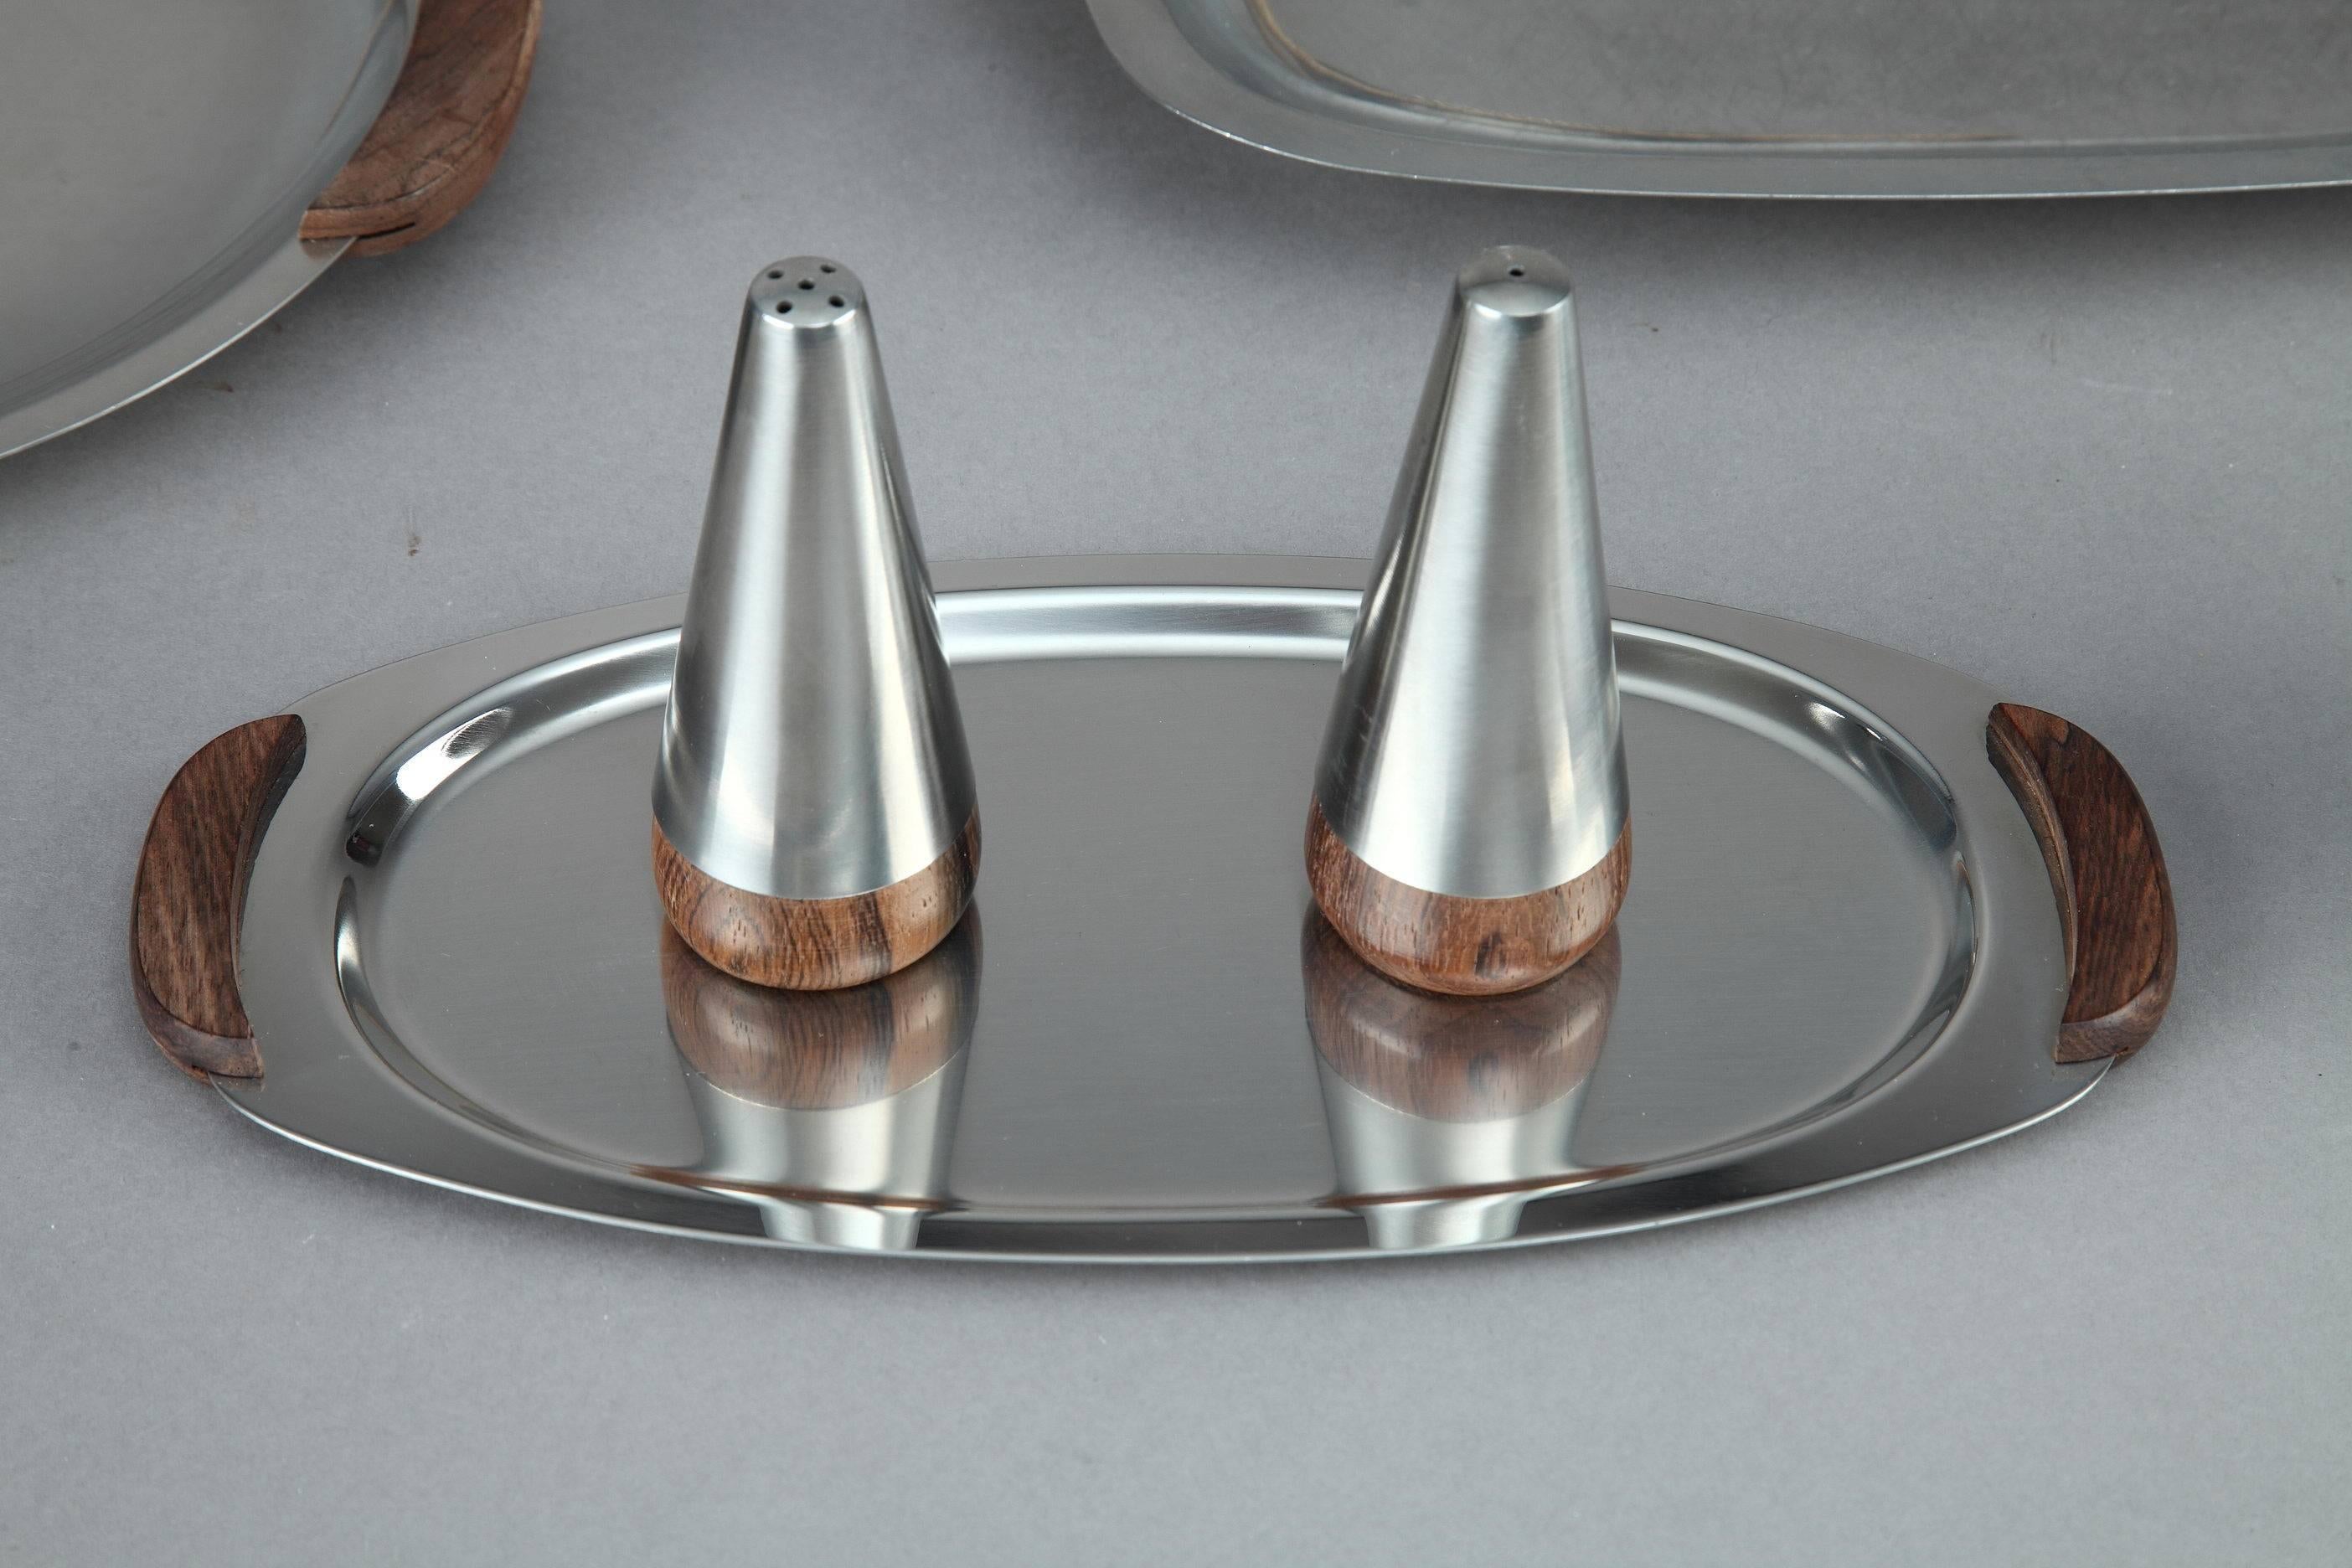 Service de table en acier inoxydable des années 1960. Il est composé de : 3 plateaux profonds, 3 plateaux plus petits et peu profonds, 4 chandeliers, 3 pots (2 de sauce, 1 de lait), Salières et poivrières. Les plateaux (dont deux ont des couvercles)